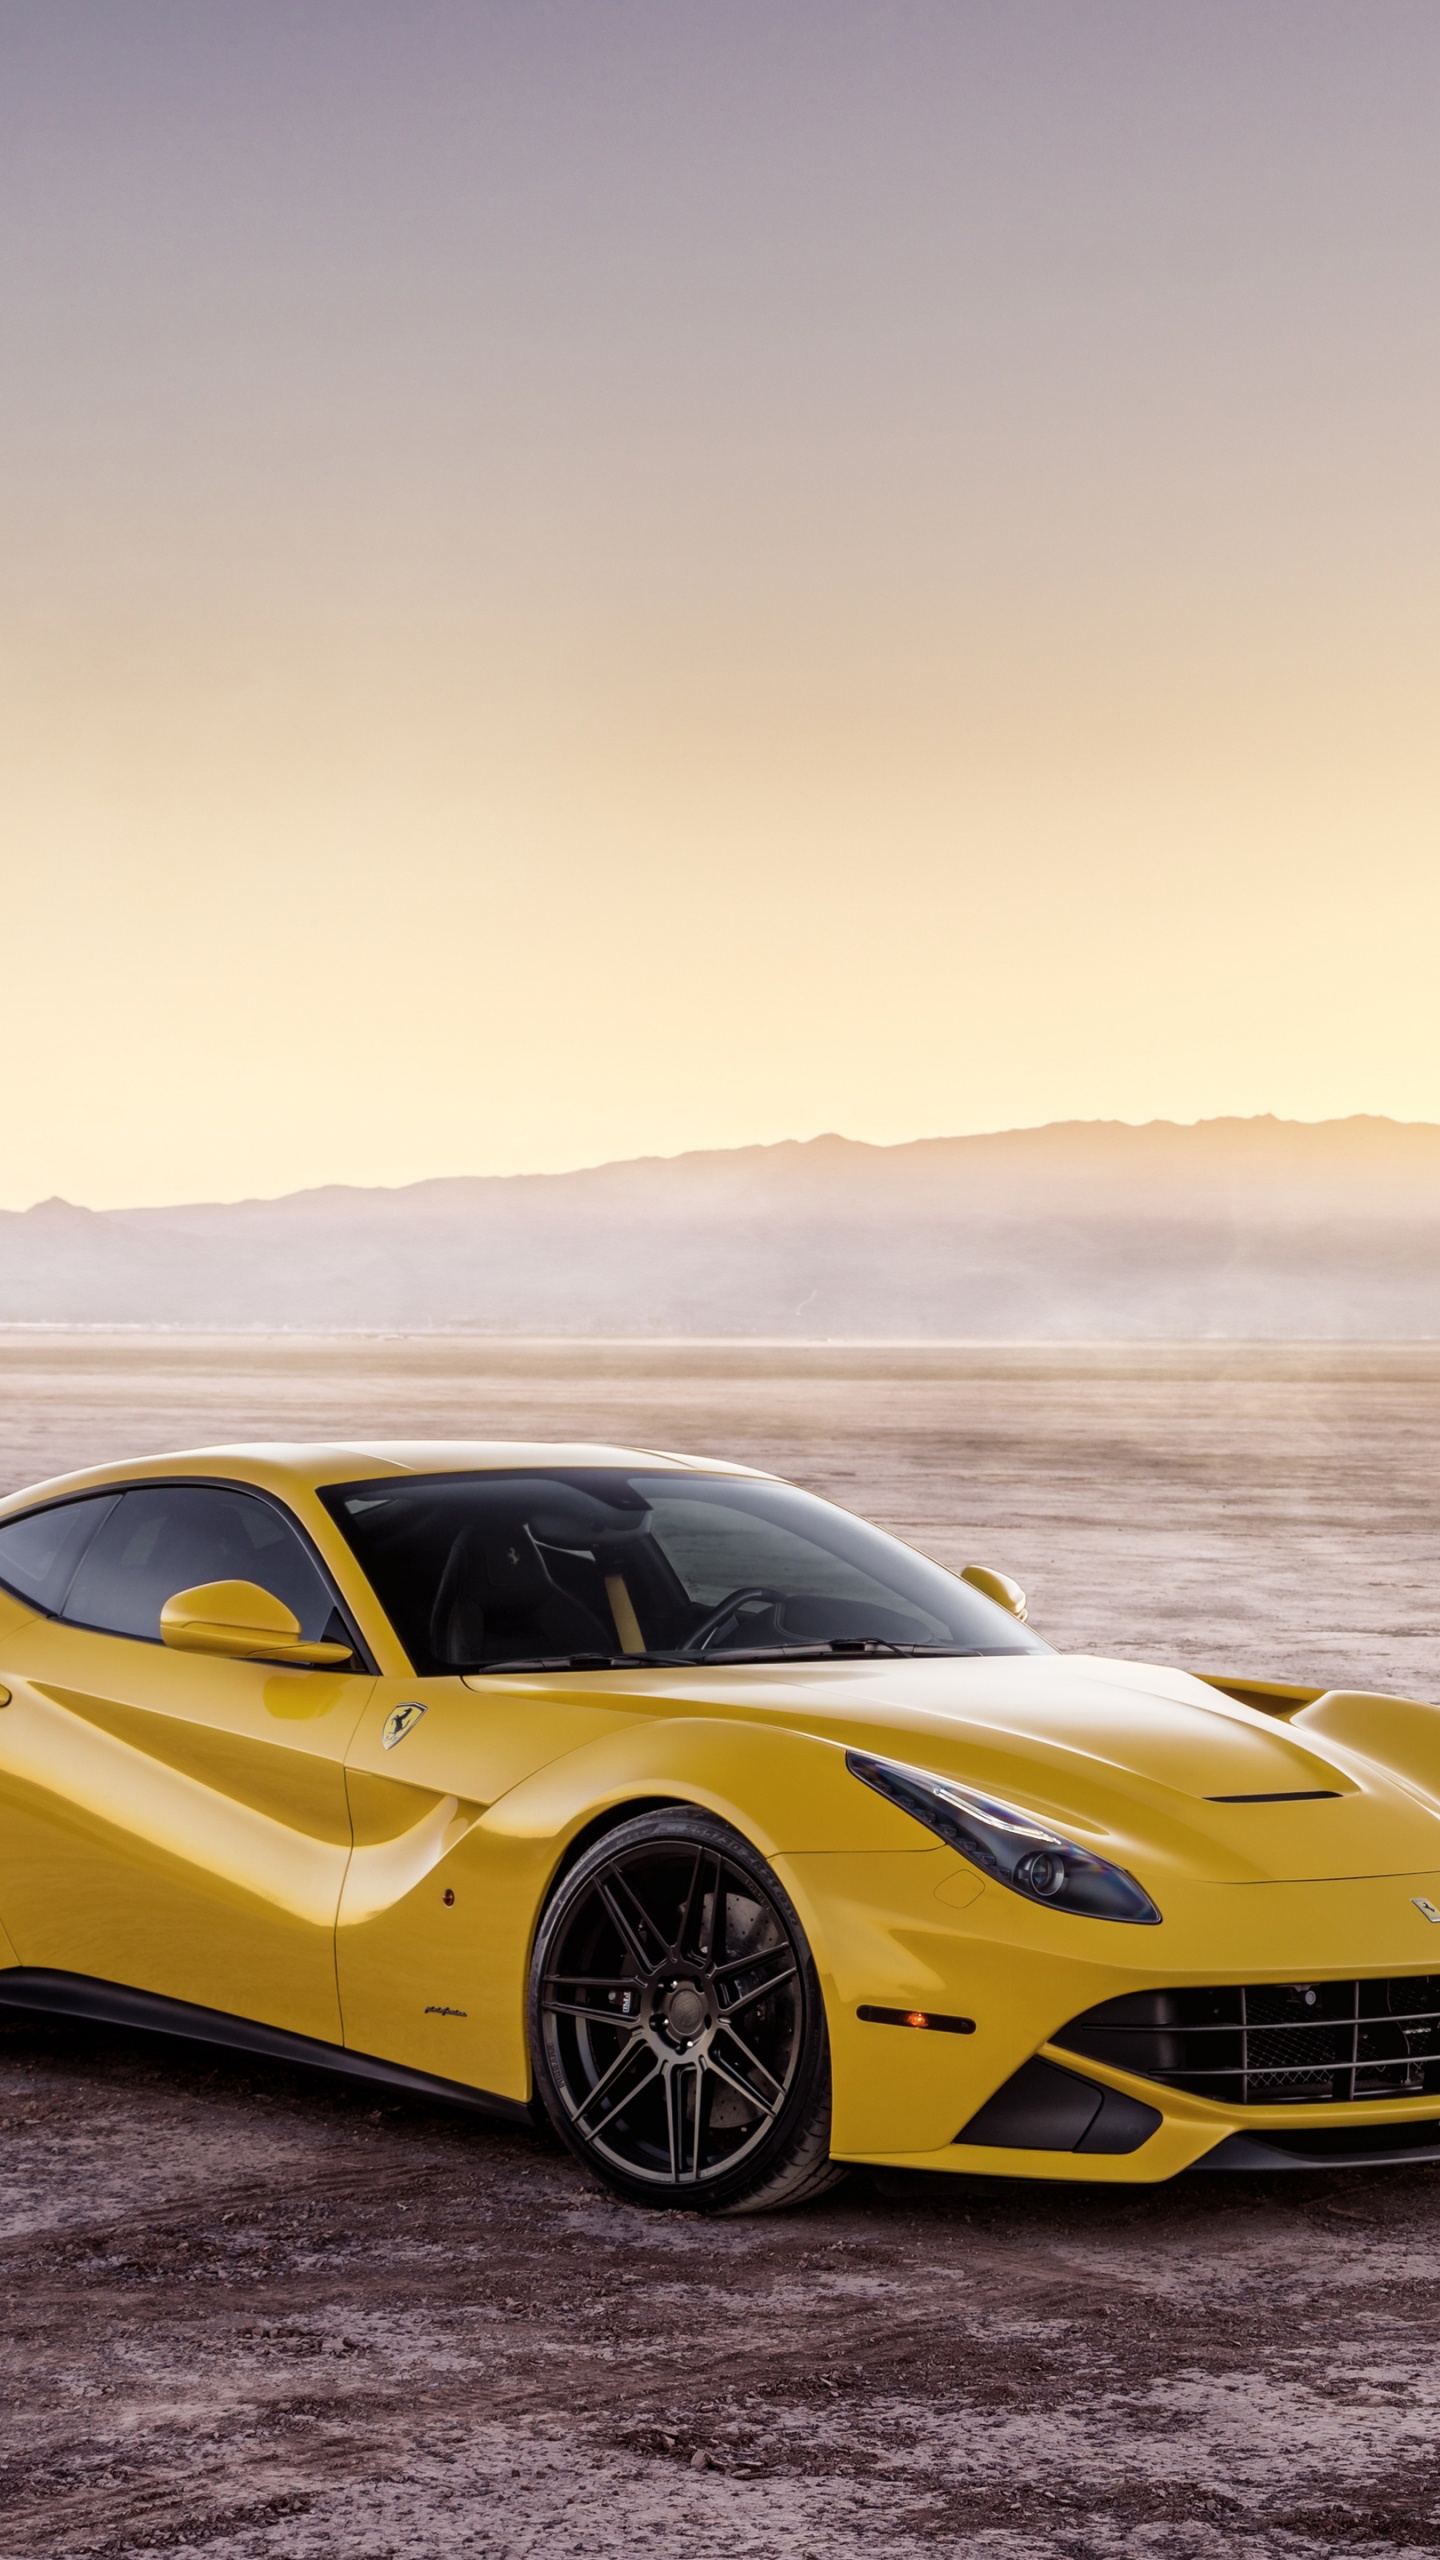 Ferrari, 超级跑车, 黄色的, 法拉利的加利福尼亚州, 法拉利fxx 壁纸 1440x2560 允许